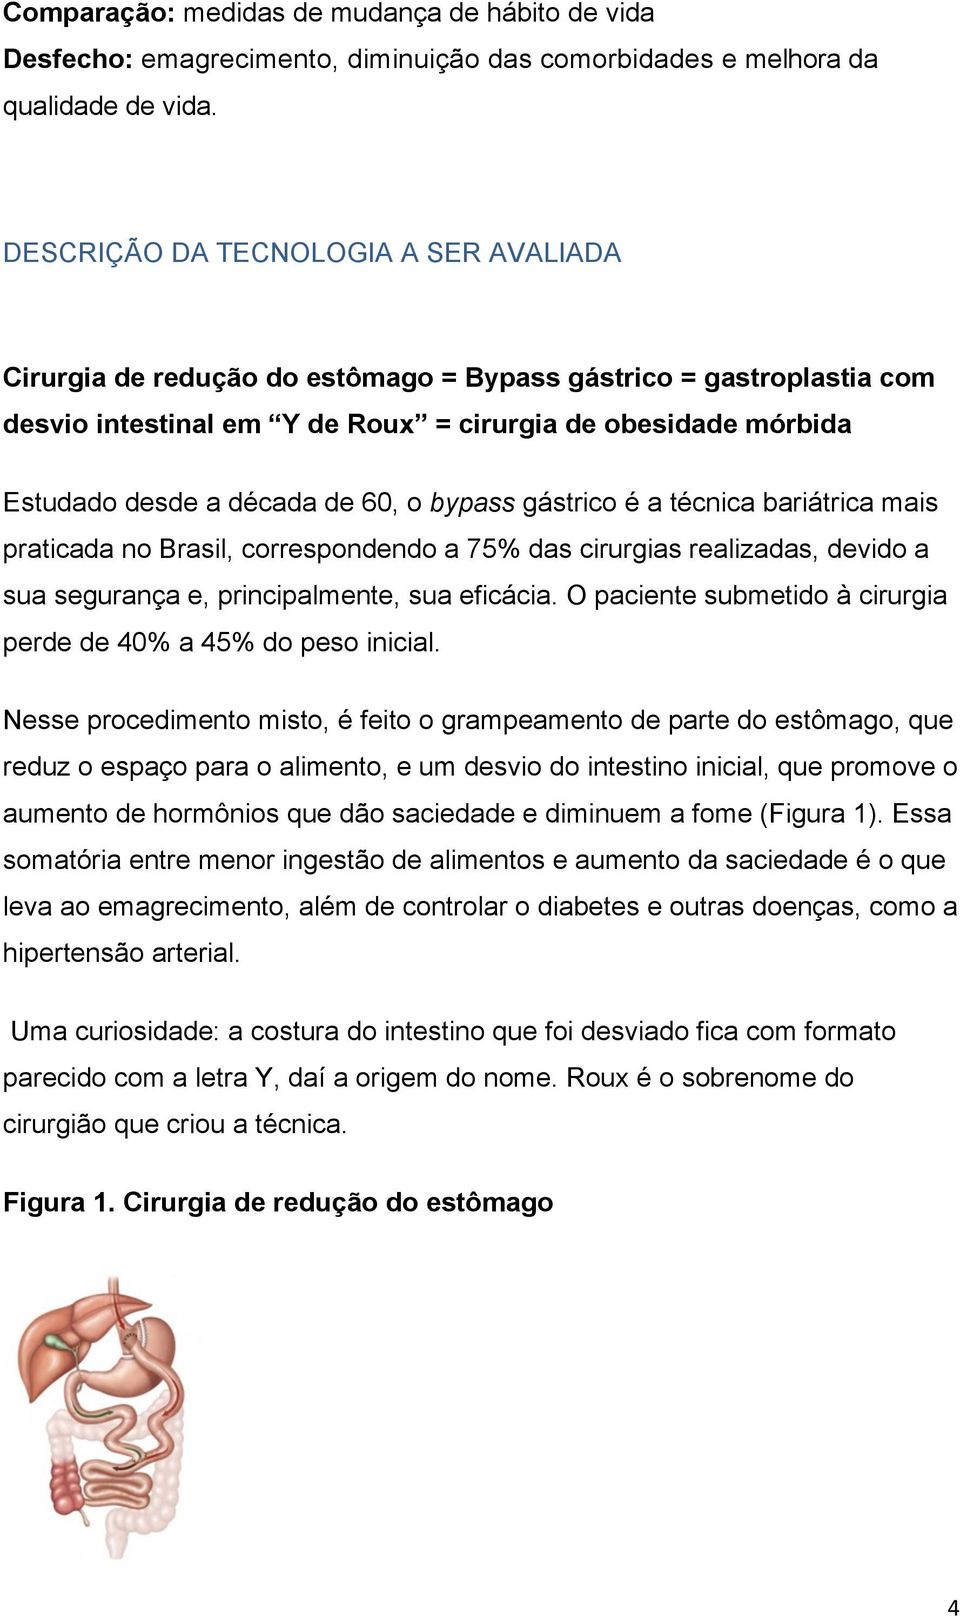 60, o bypass gástrico é a técnica bariátrica mais praticada no Brasil, correspondendo a 75% das cirurgias realizadas, devido a sua segurança e, principalmente, sua eficácia.